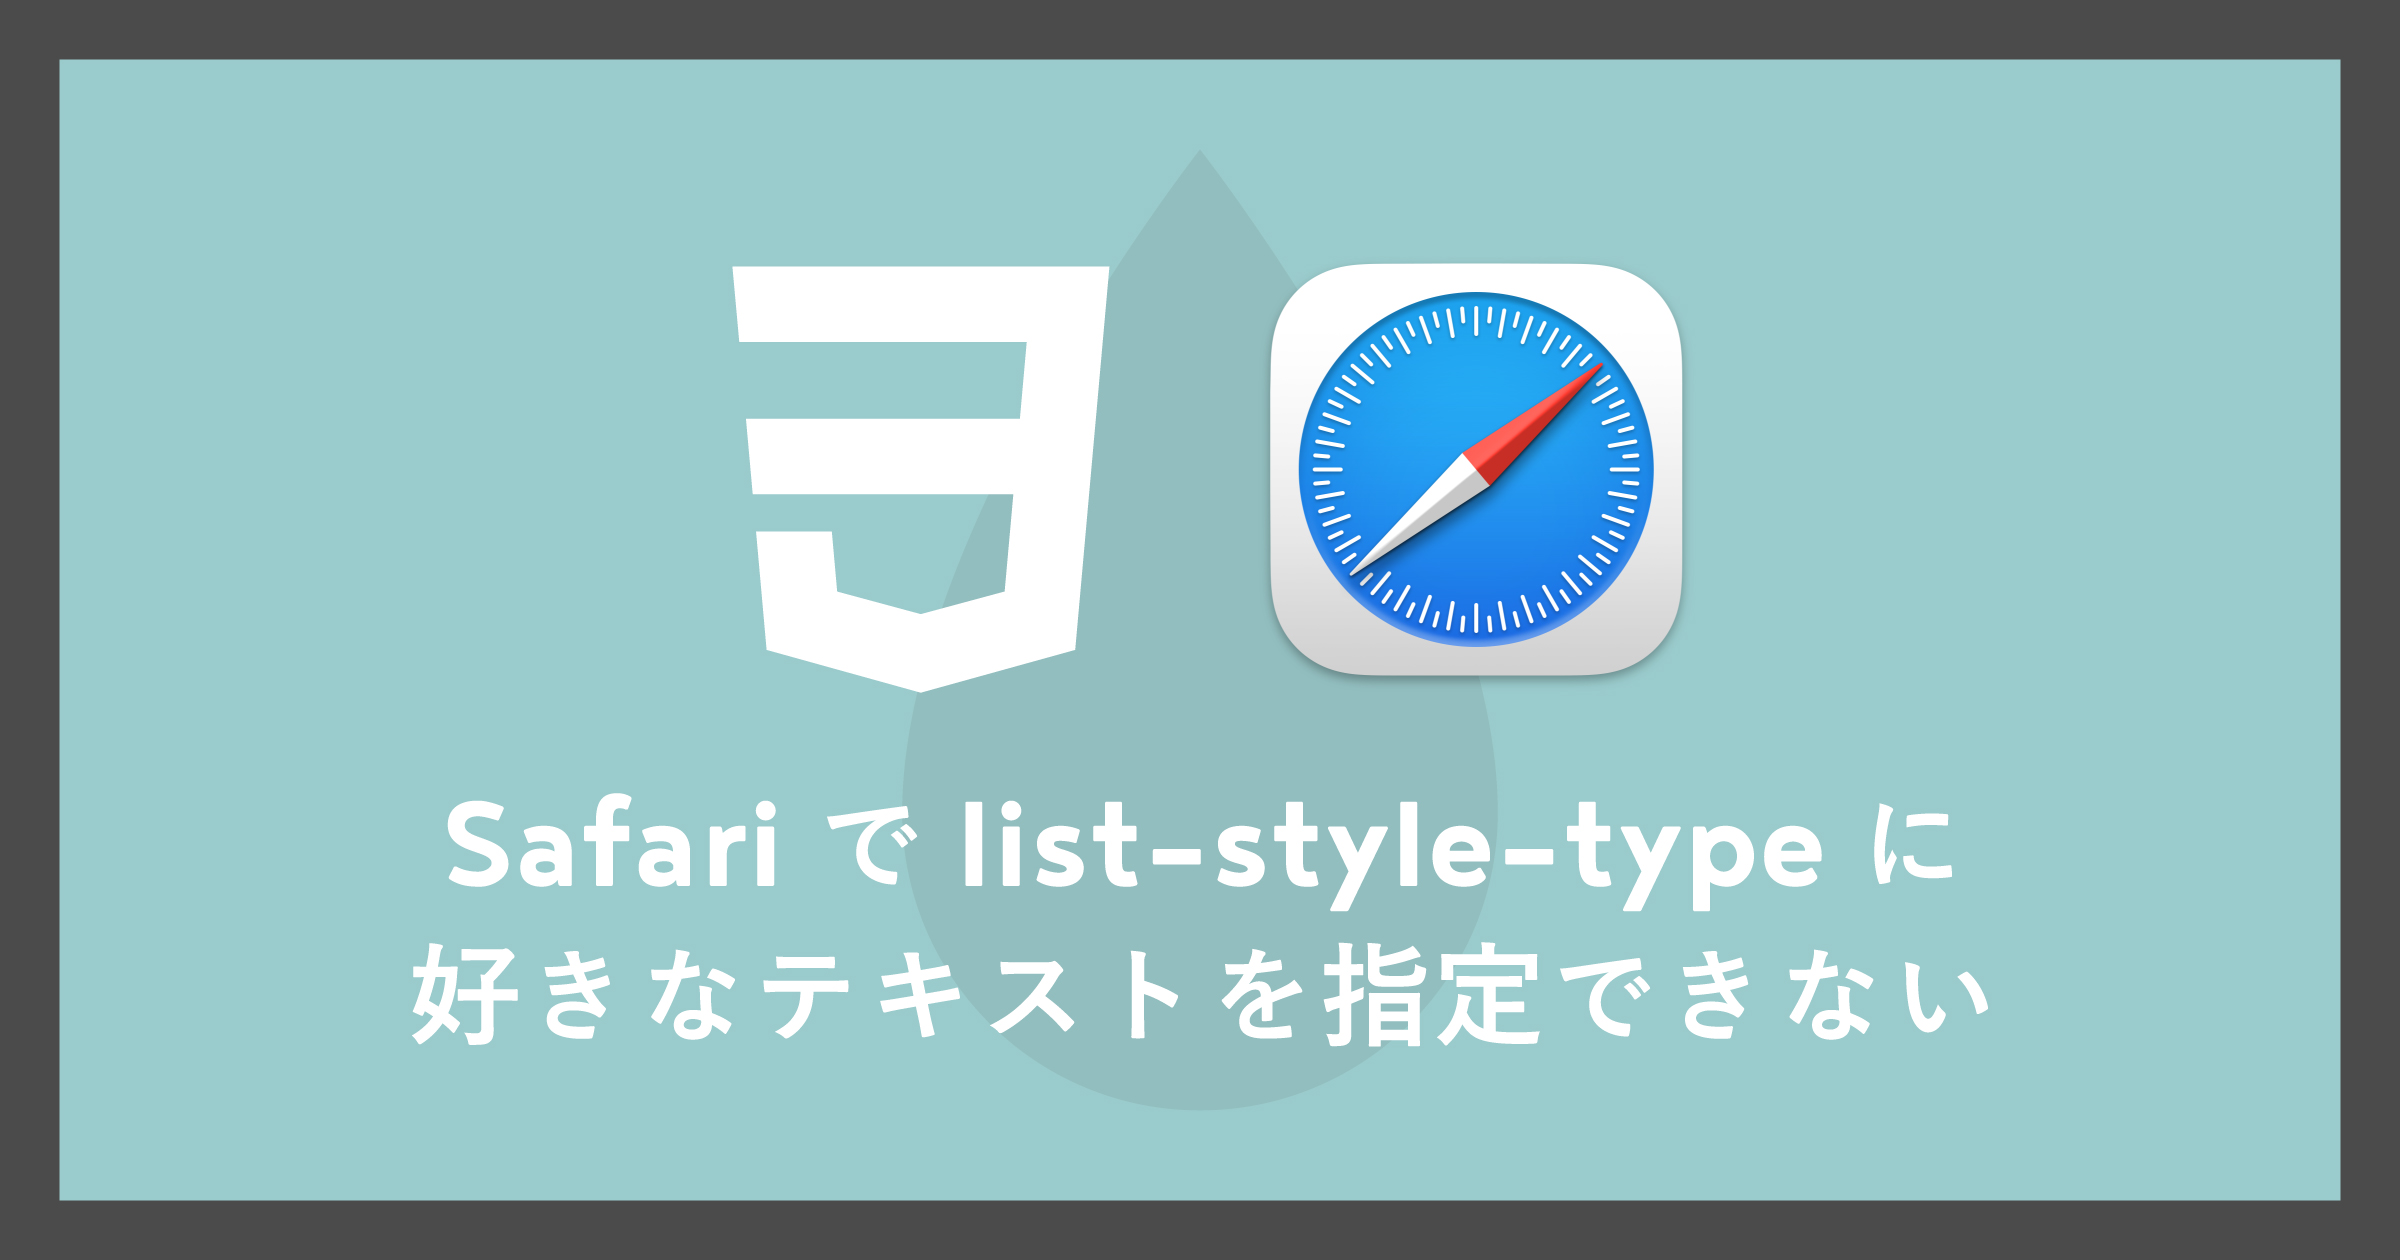 「[CSS]Safariでlist-style-typeに任意テキストを指定できない」のアイキャッチ画像